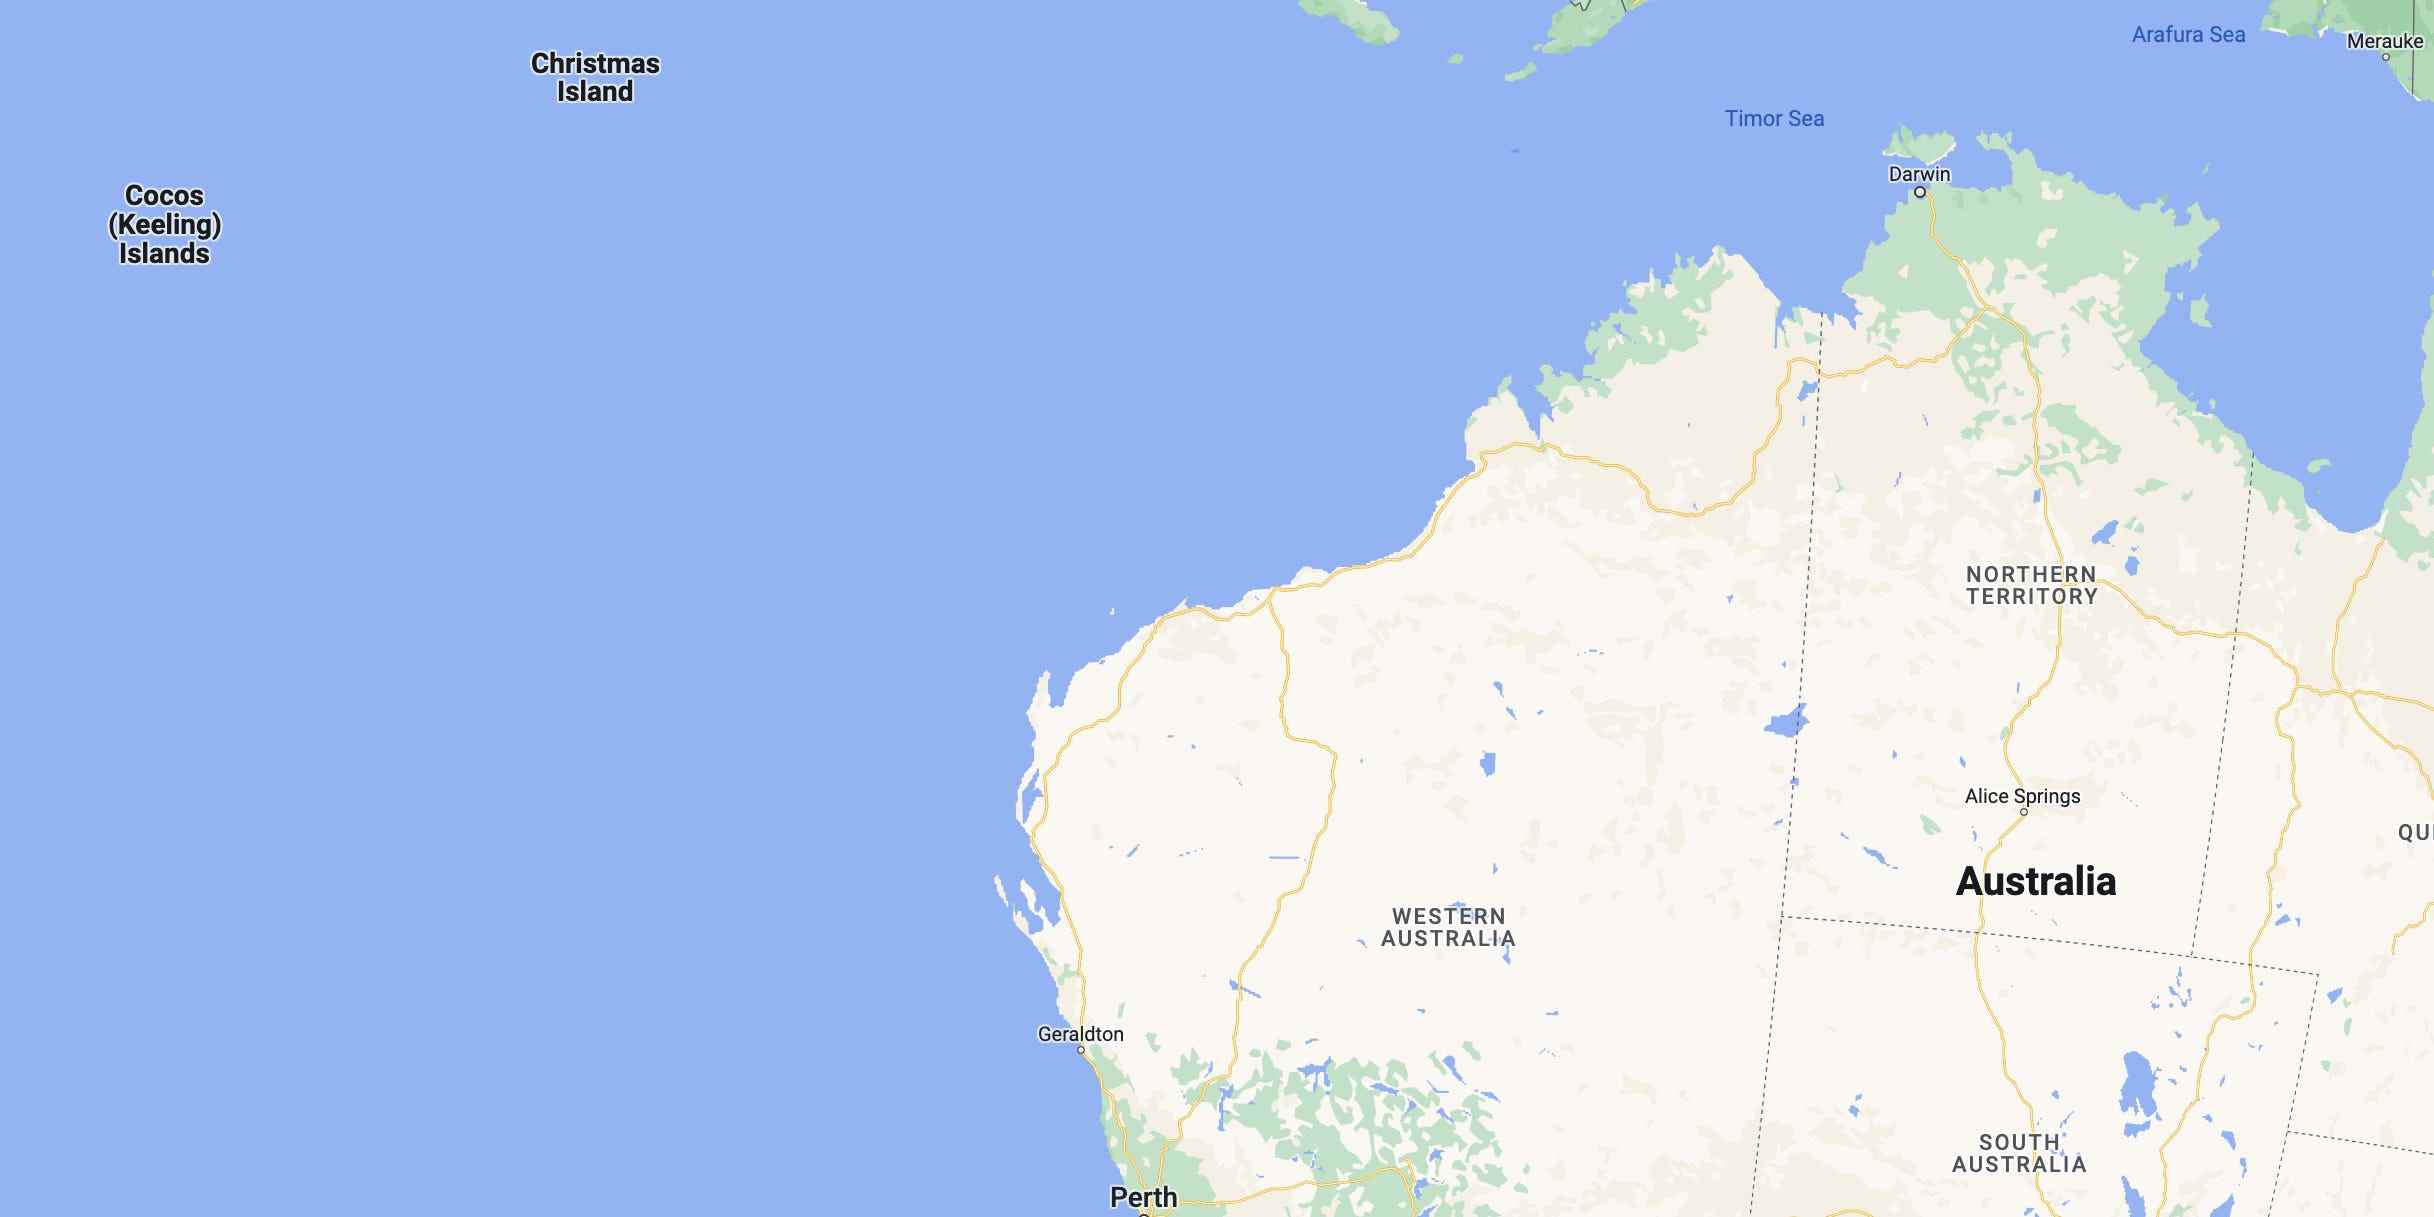 Die Kokosinseln sind auf einer Karte westlich der australischen Küste dargestellt.